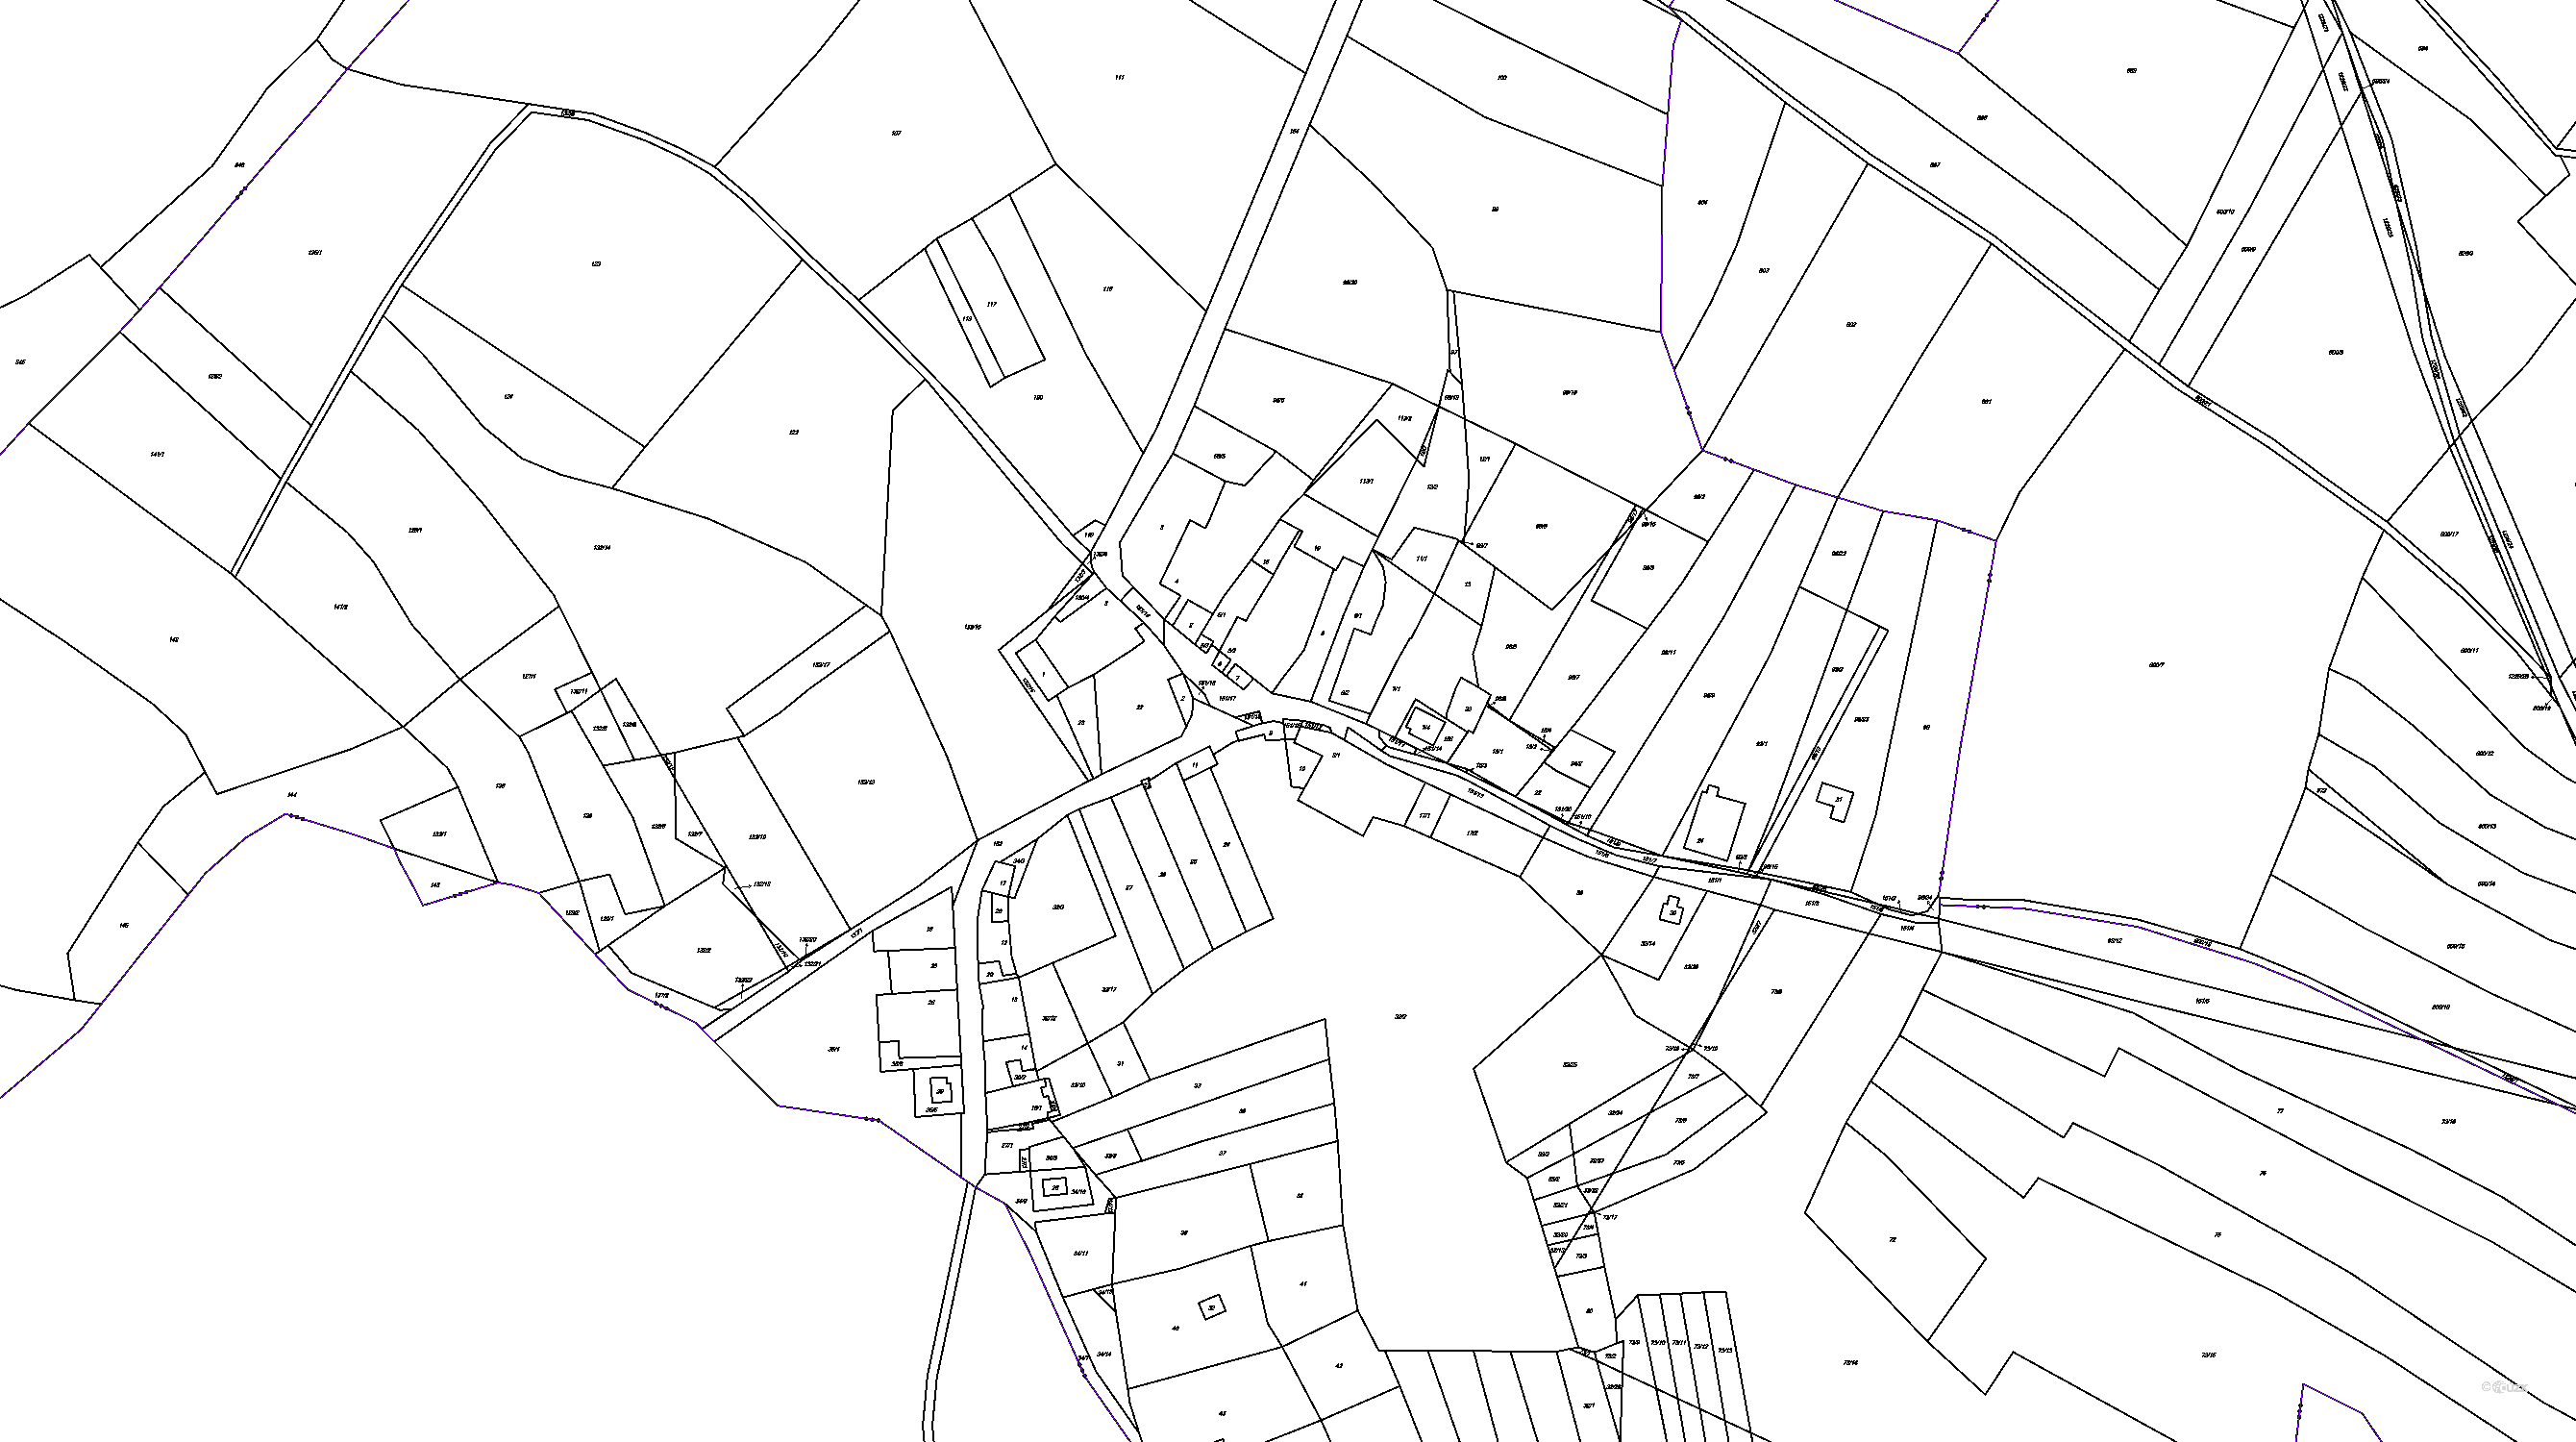 Katastrální mapa pozemků a čísla parcel Ondrušky